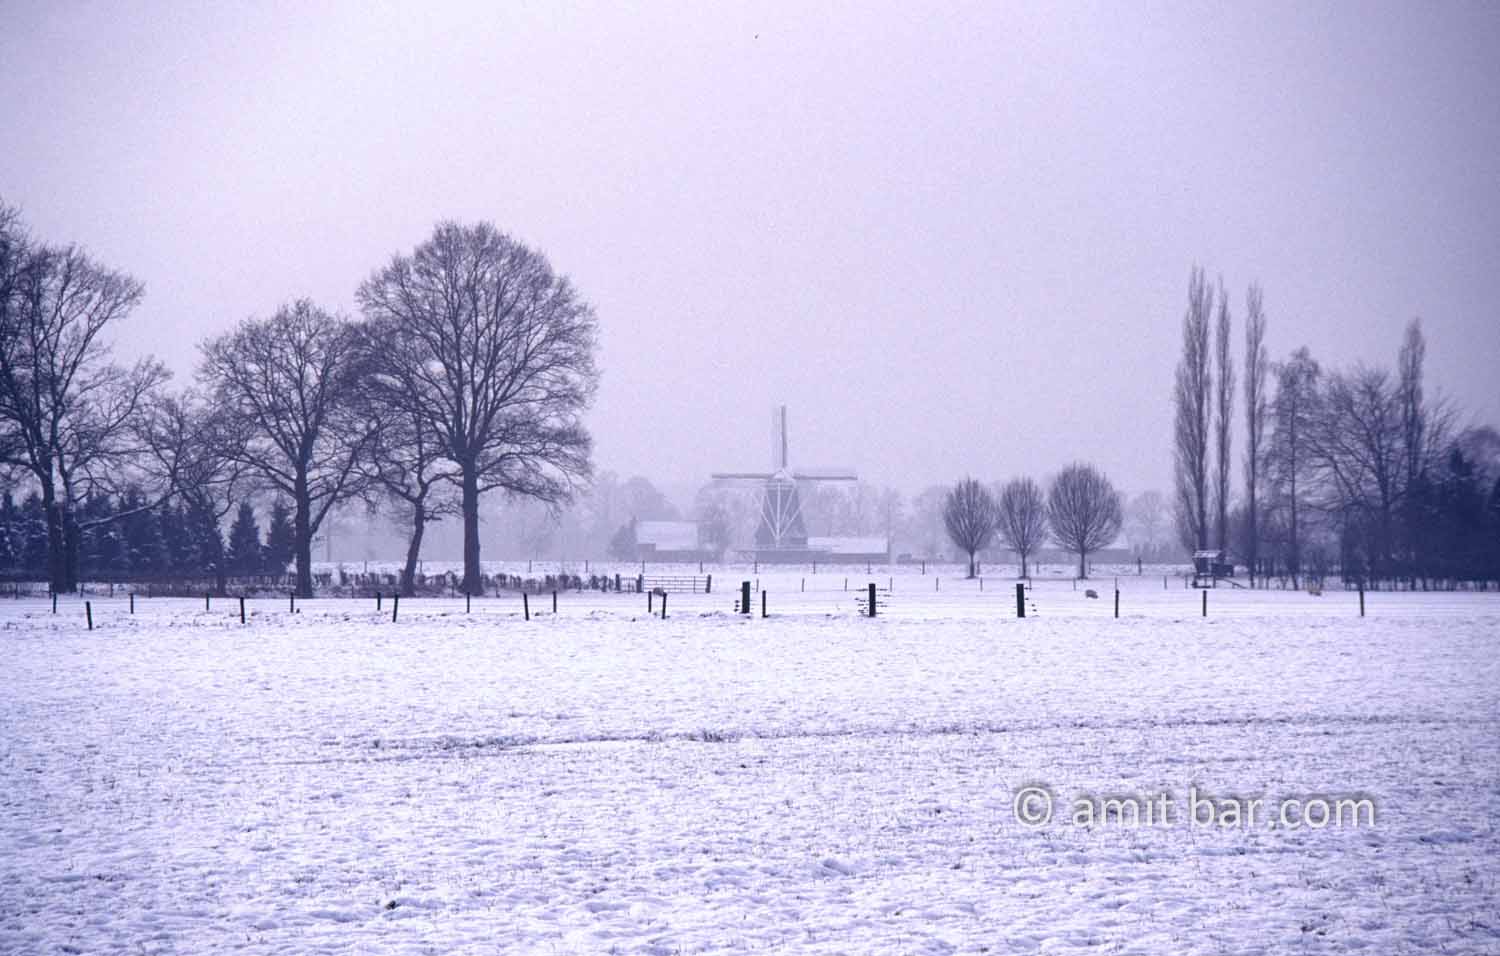 Windmill in snowy landscape: Benninkmolen windmill in winter, Doetinchem, The Netherlands